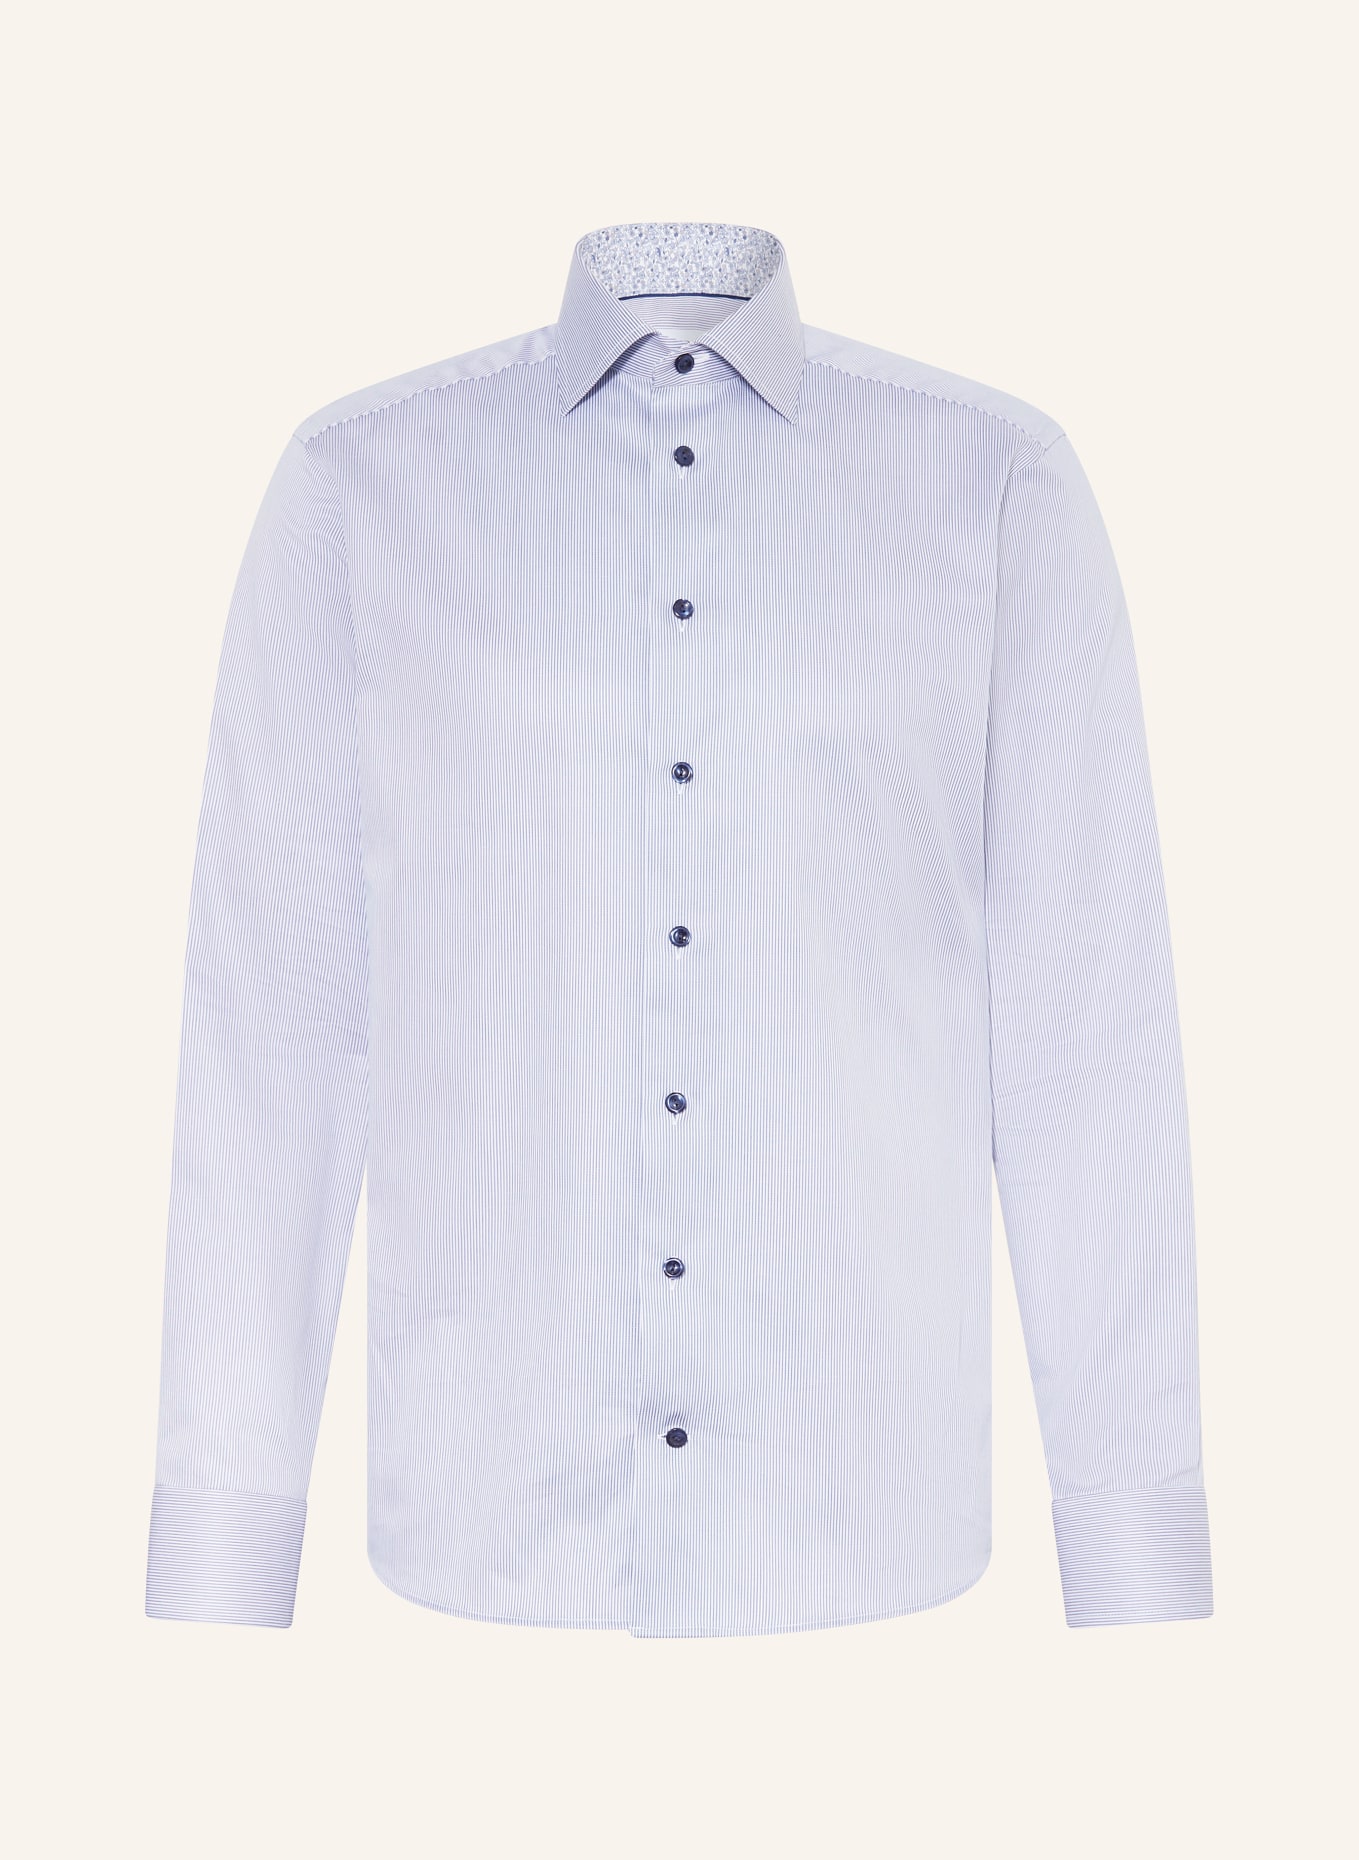 ETON Hemd Slim Fit, Farbe: BLAU/ WEISS (Bild 1)